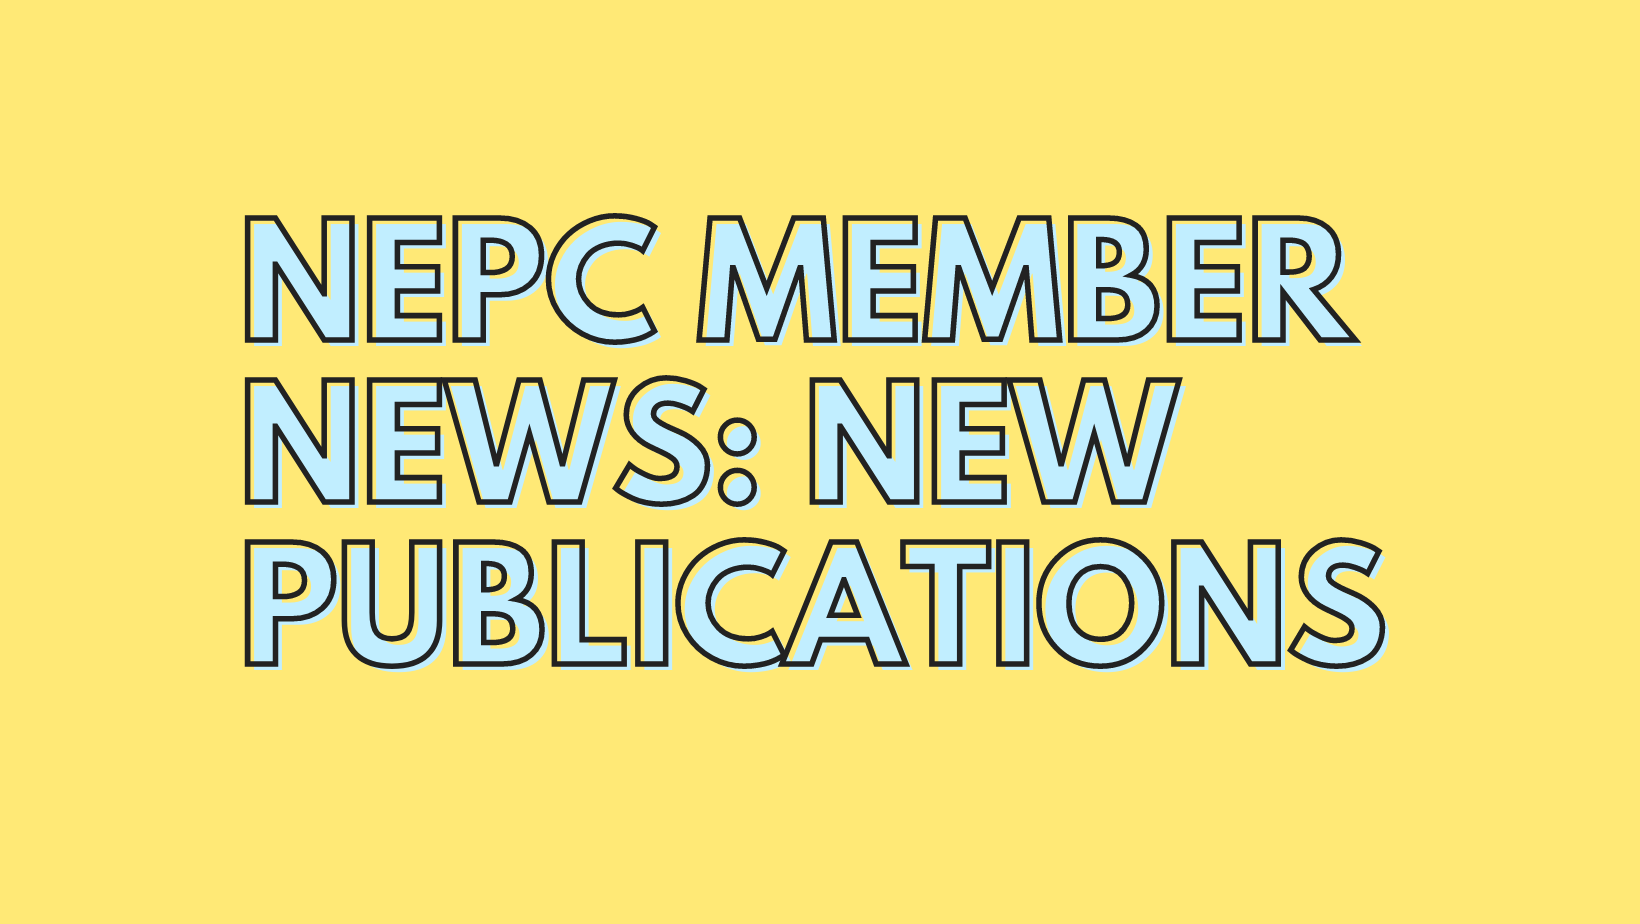 Member Publication News for February 2023